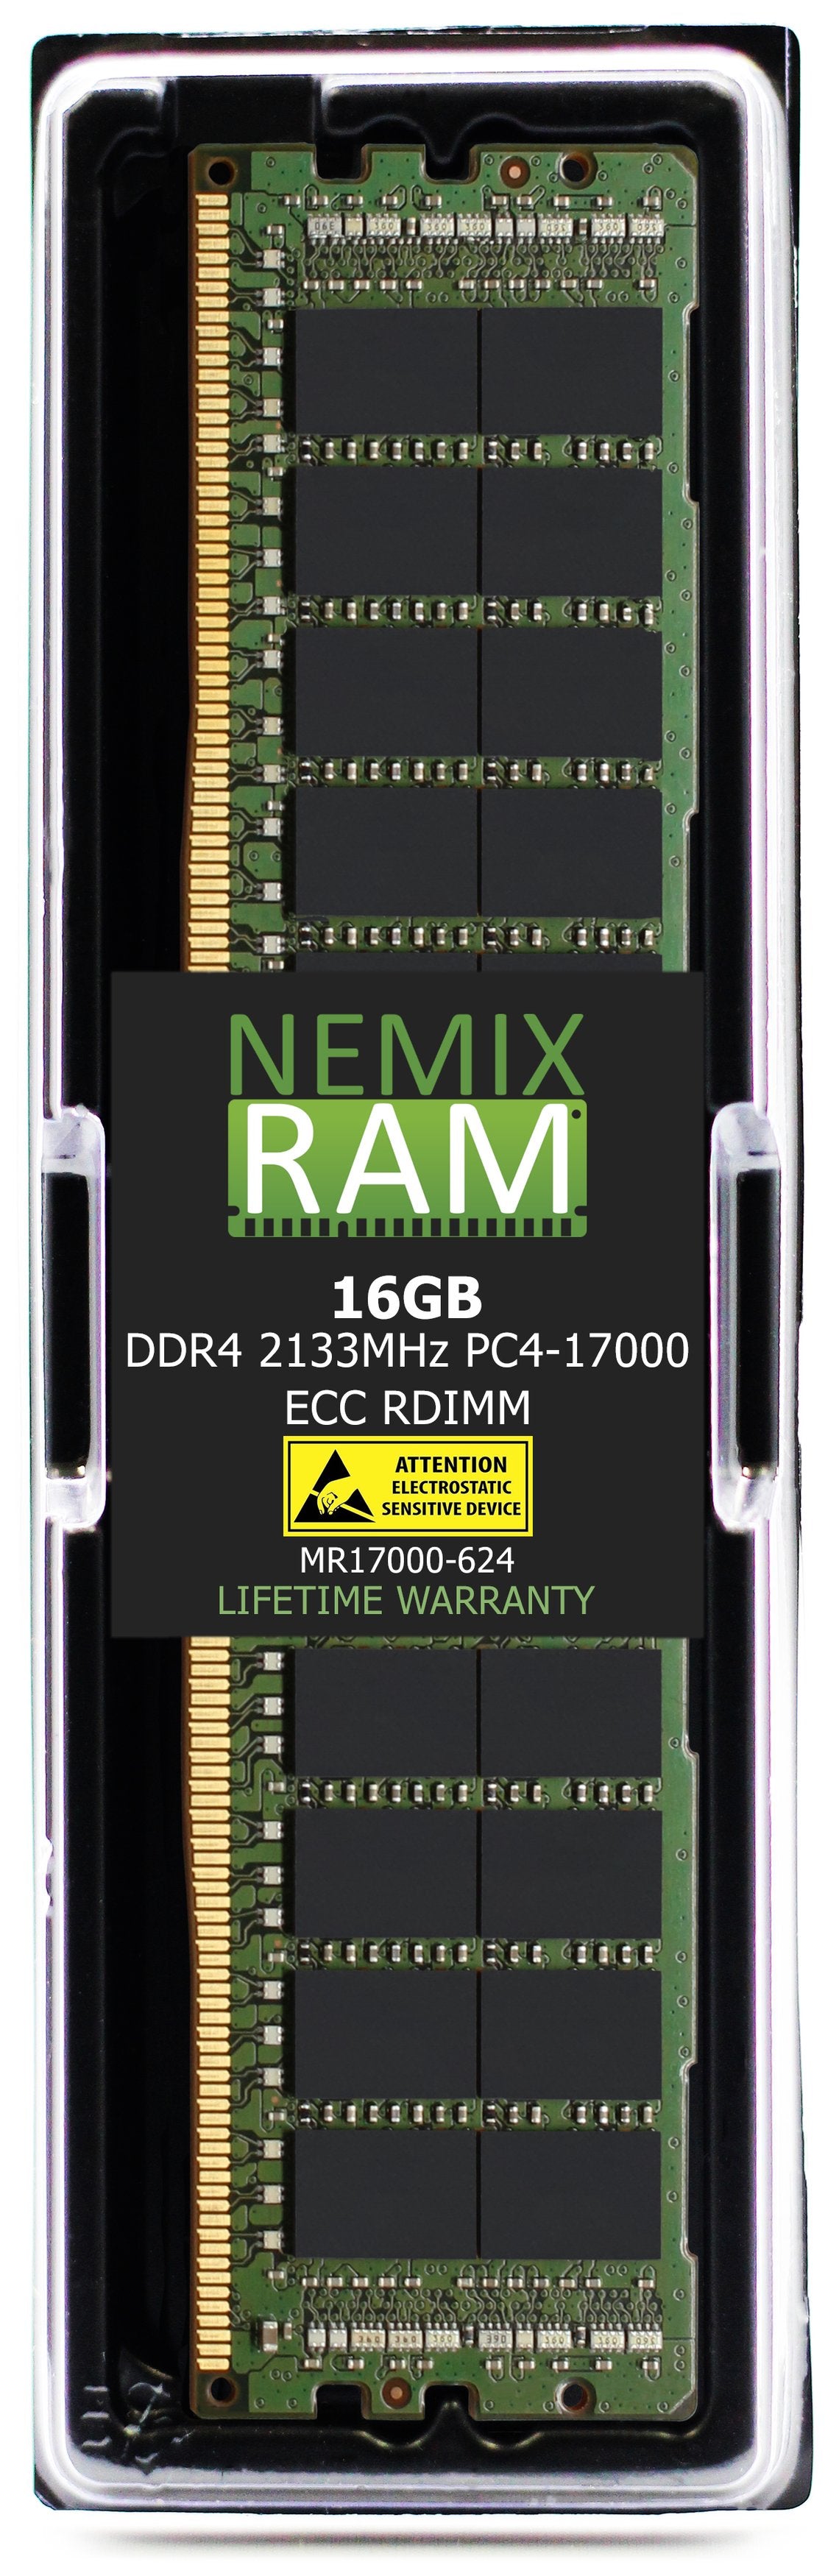 16GB DDR4 2133HZ PC4-17000 VLP RDIMM Compatible with Supermicro MEM-DR416L-CV01-ER21